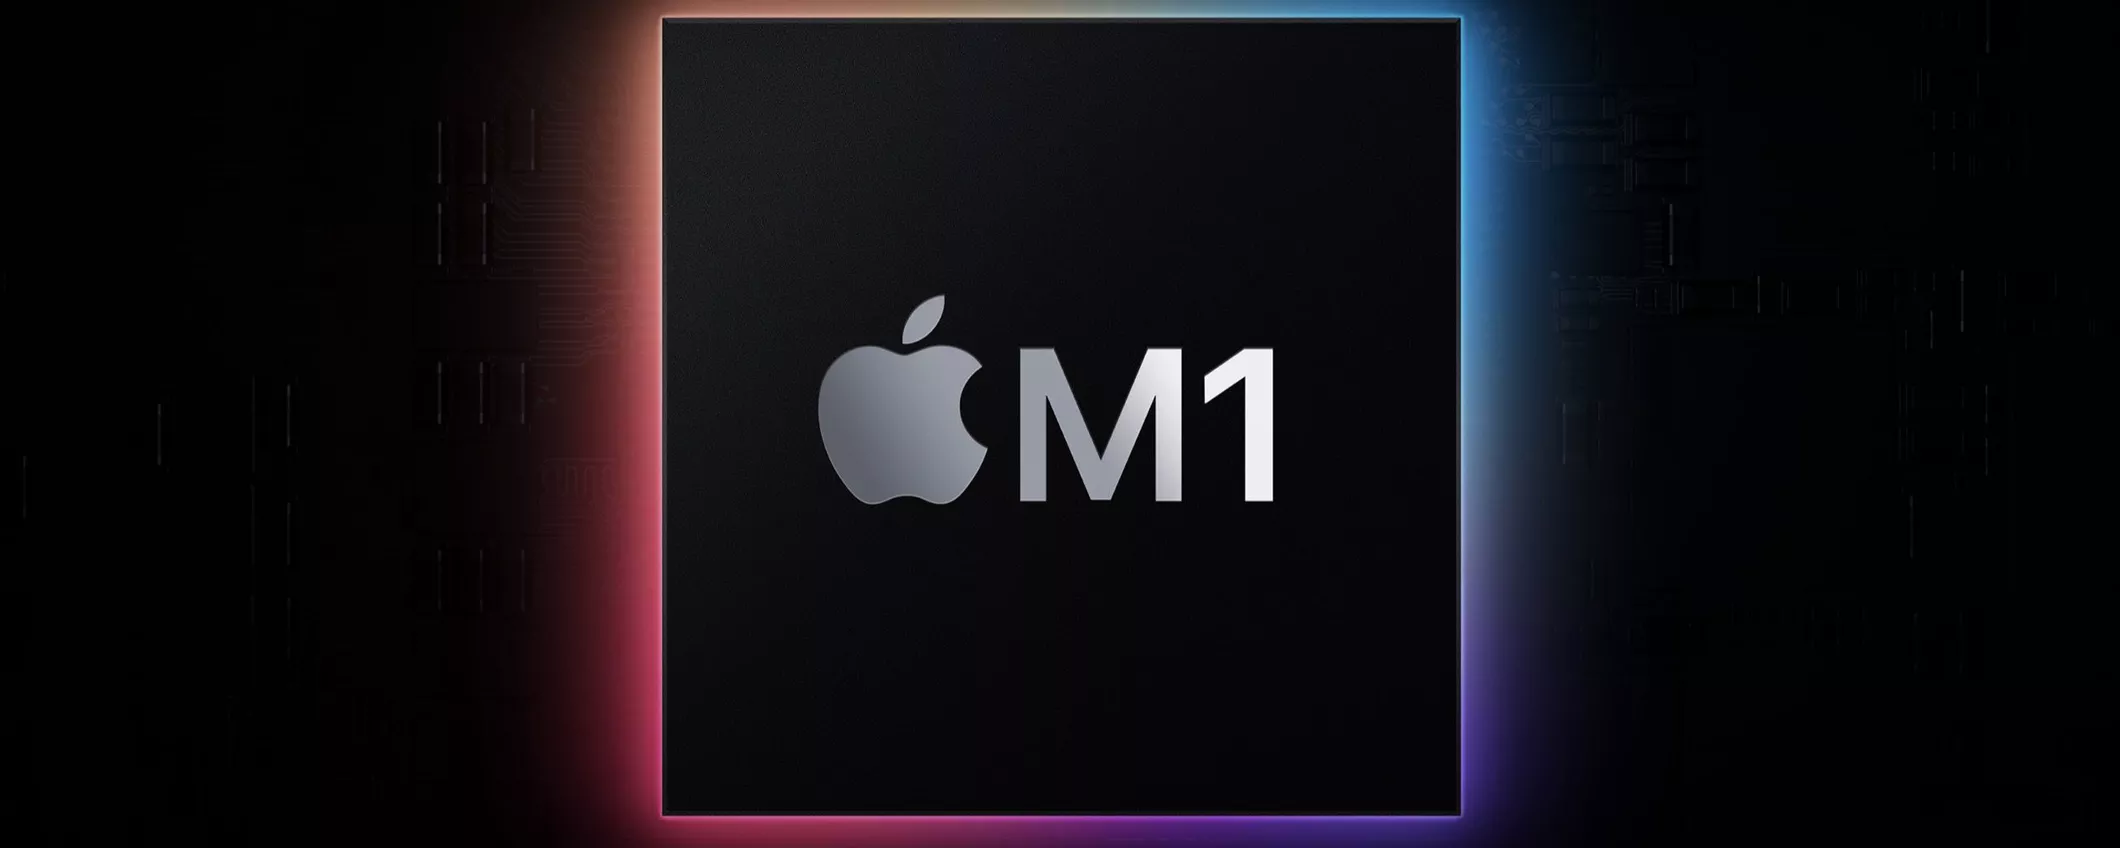 Mac con M1: autonomia senza pari per MacBook Air e Pro